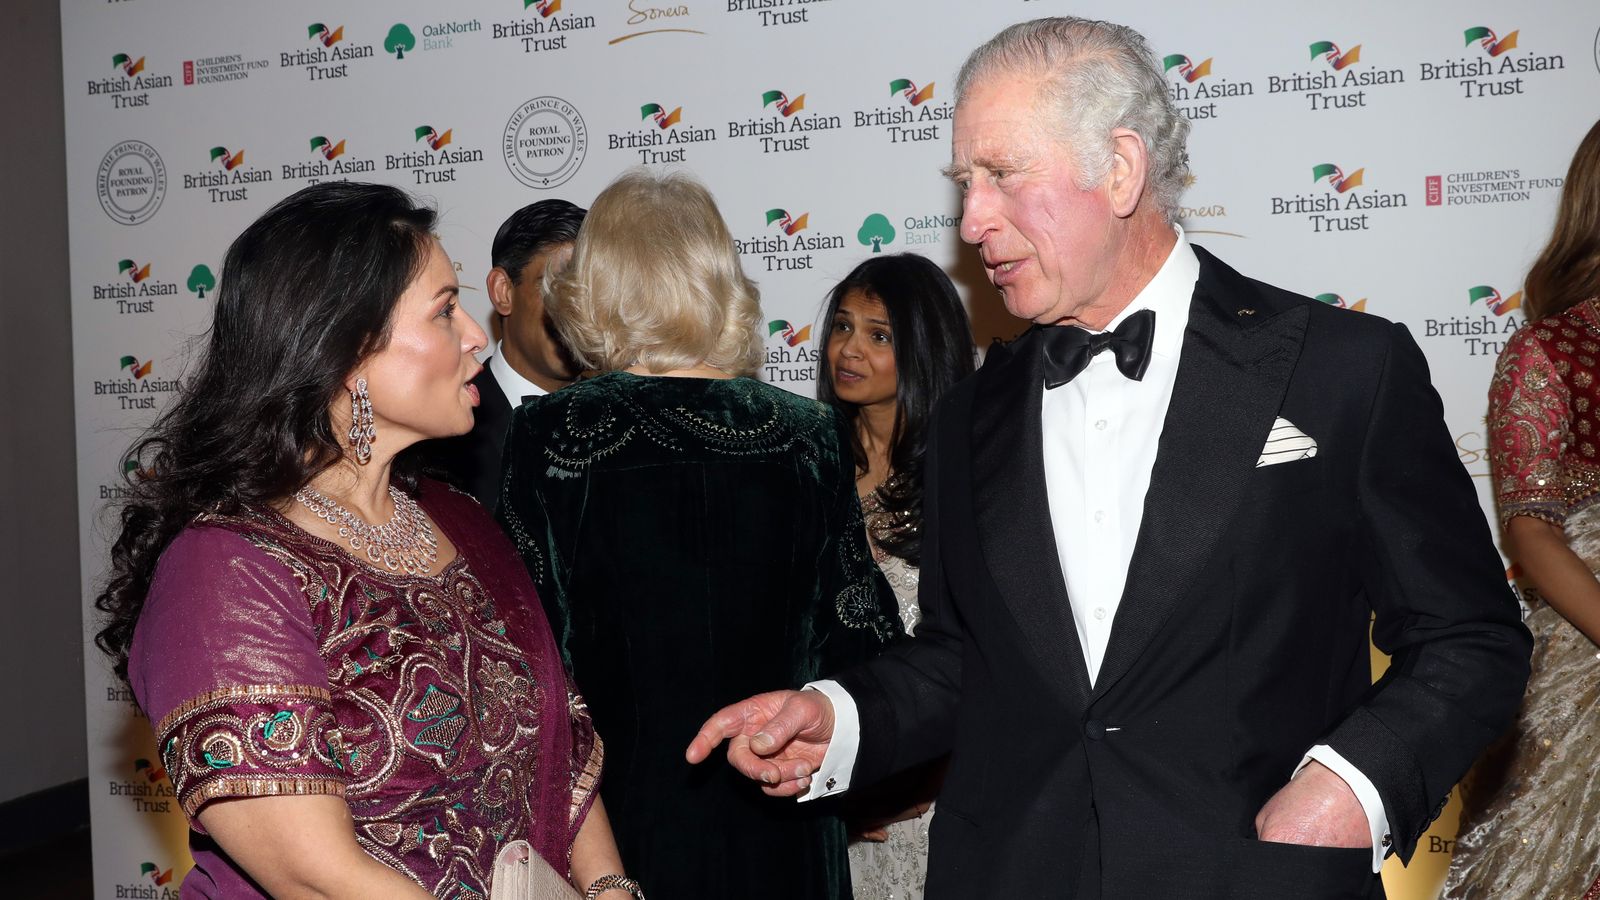 الأمير تشارلز يتحدث لوزيرة الداخلية في حفل الصندوق البريطاني الآسيوي 